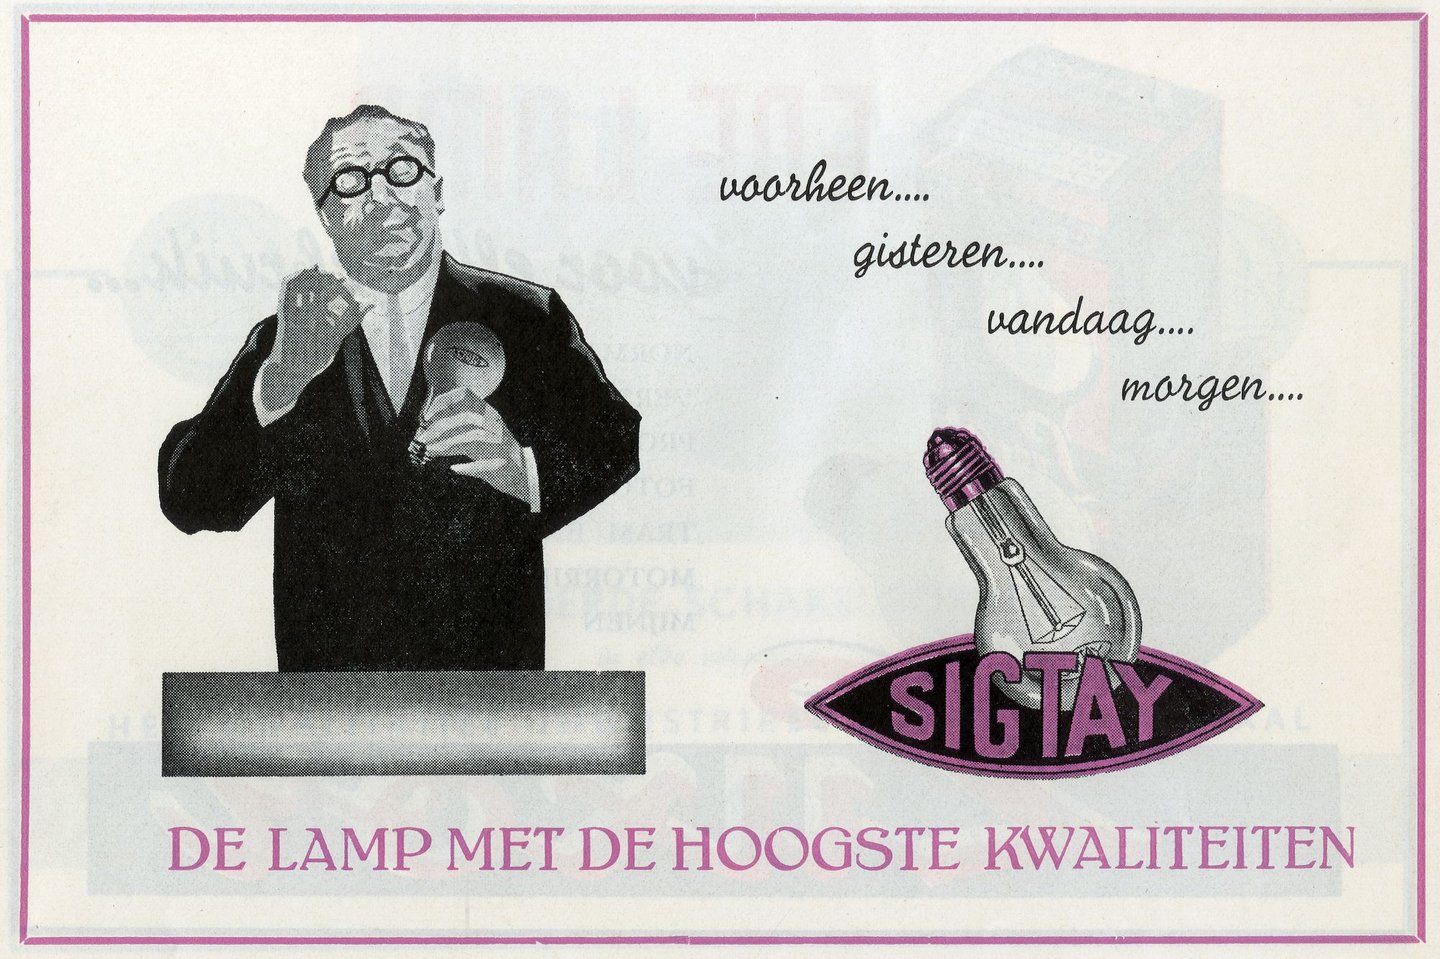 Reclame voor lampen van het merk Sigtay